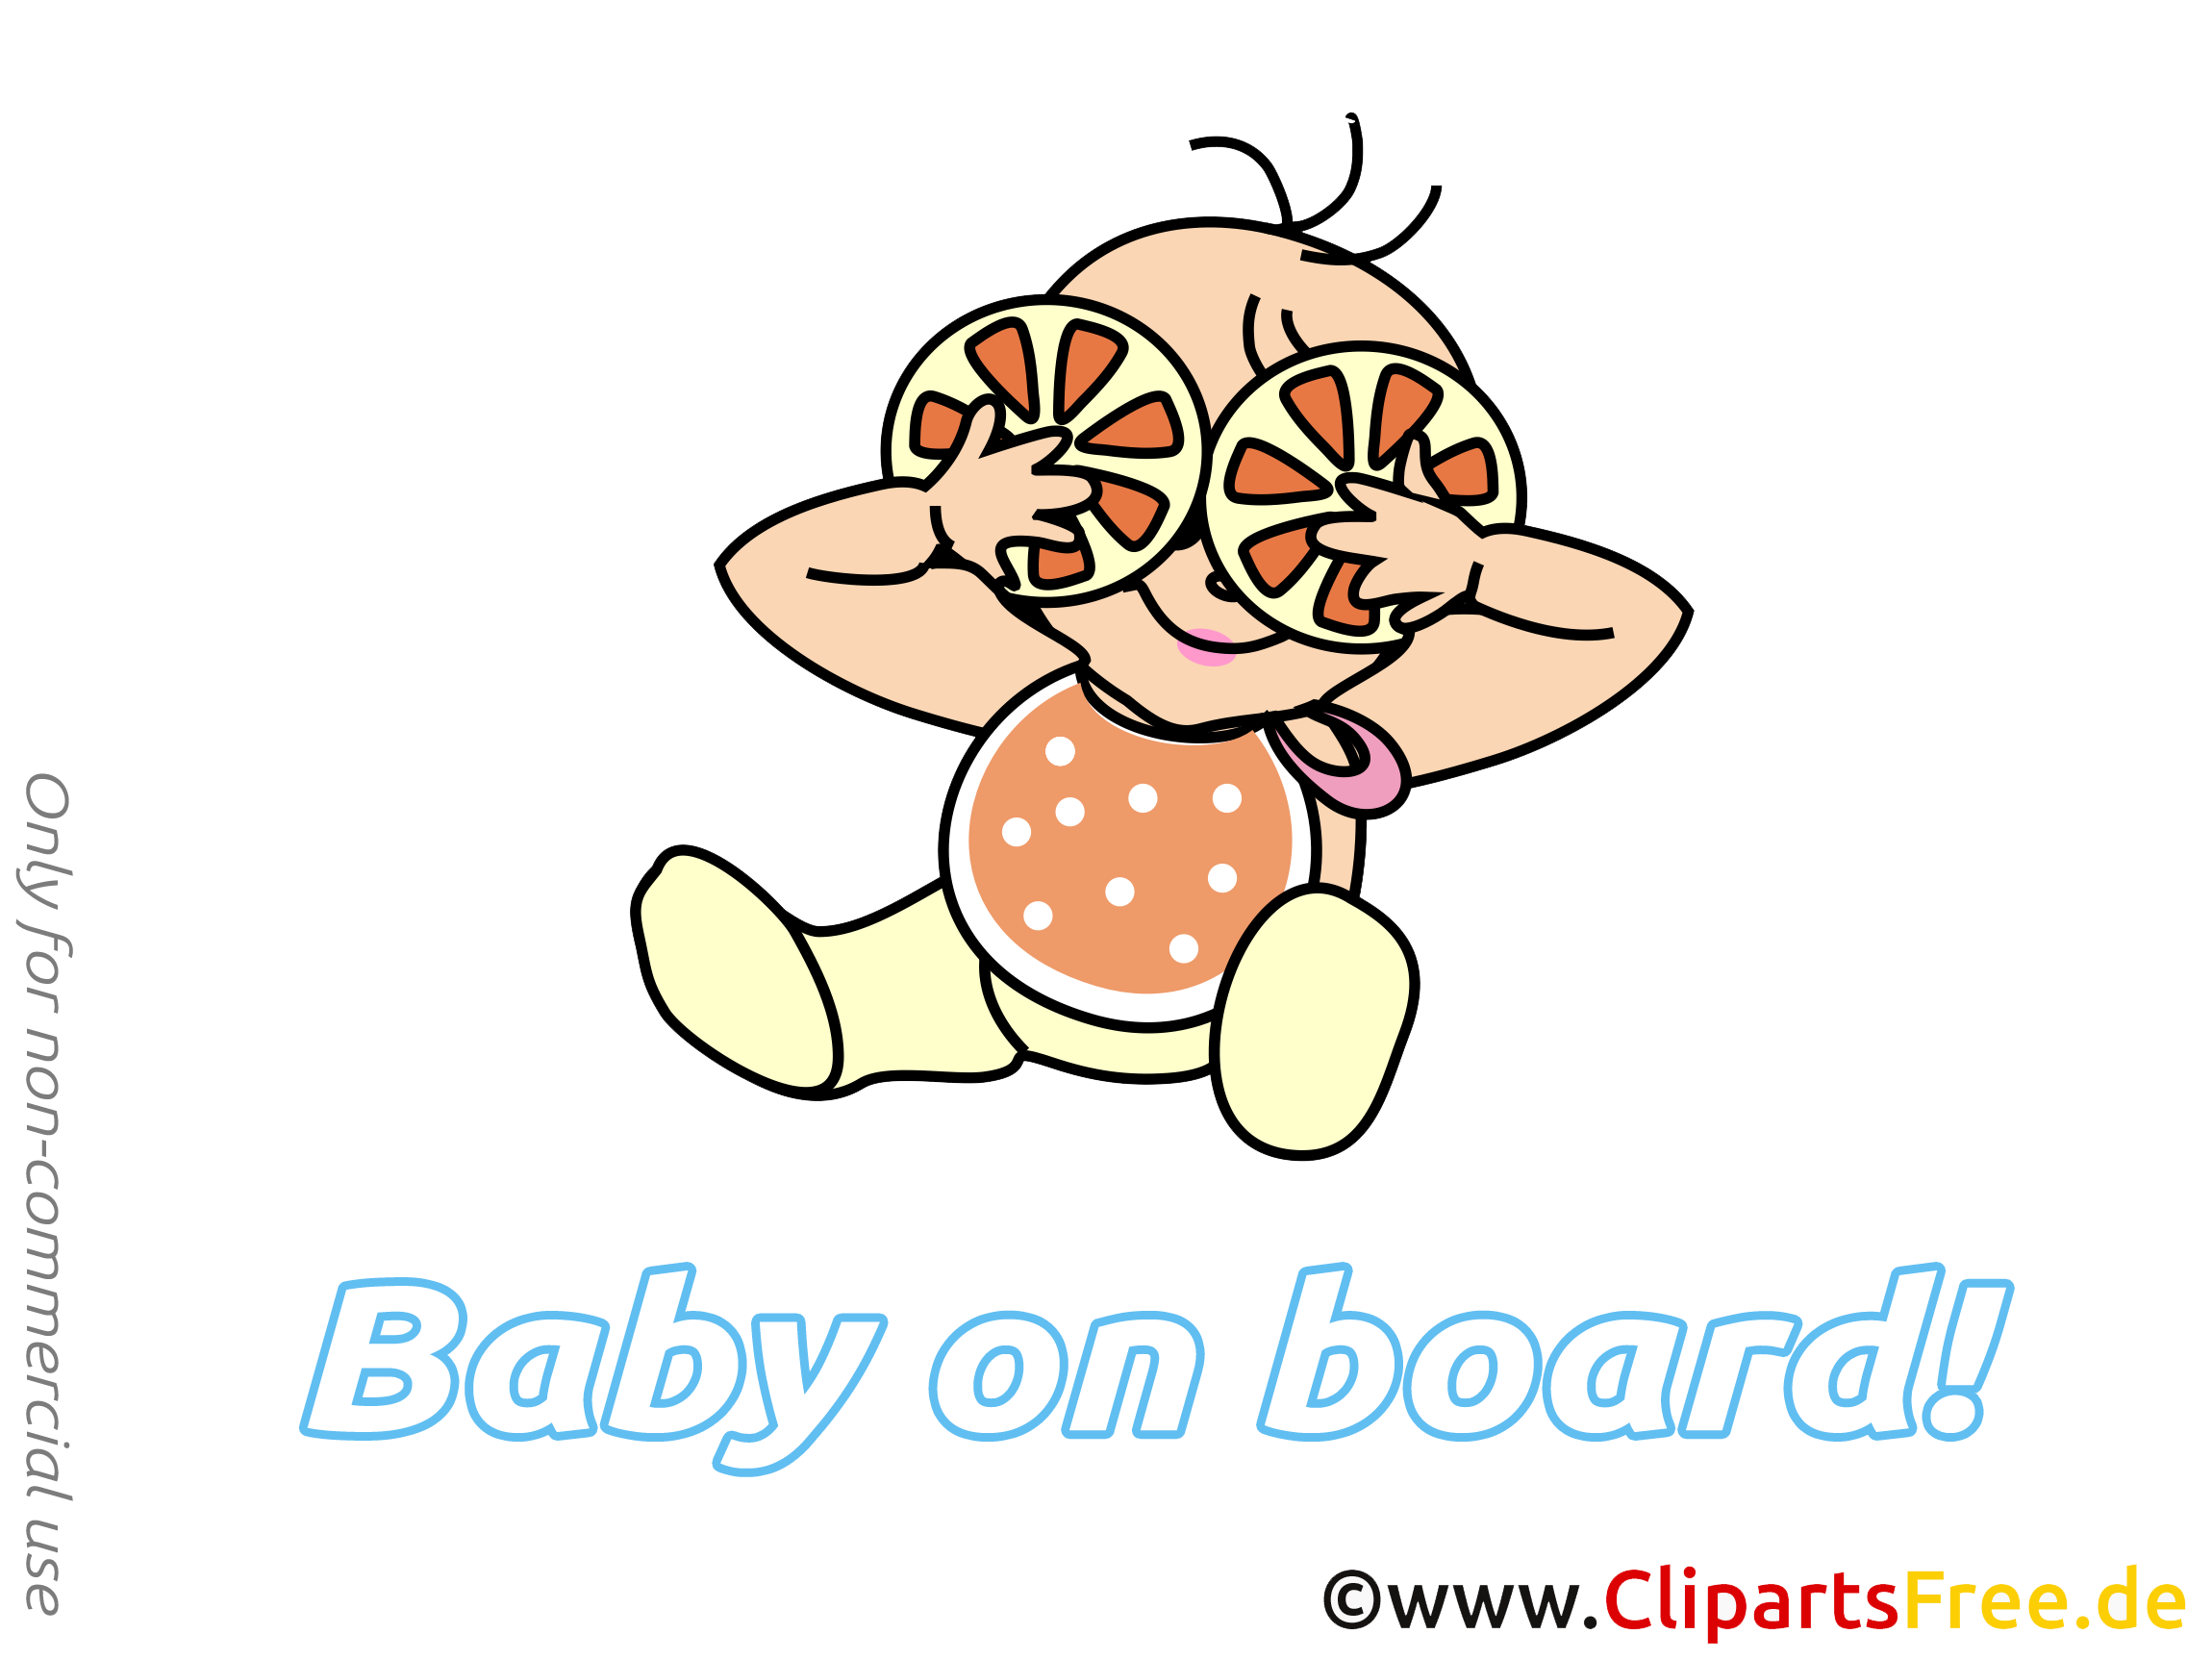 Clipart gratuit oranges – Bébé à bord images